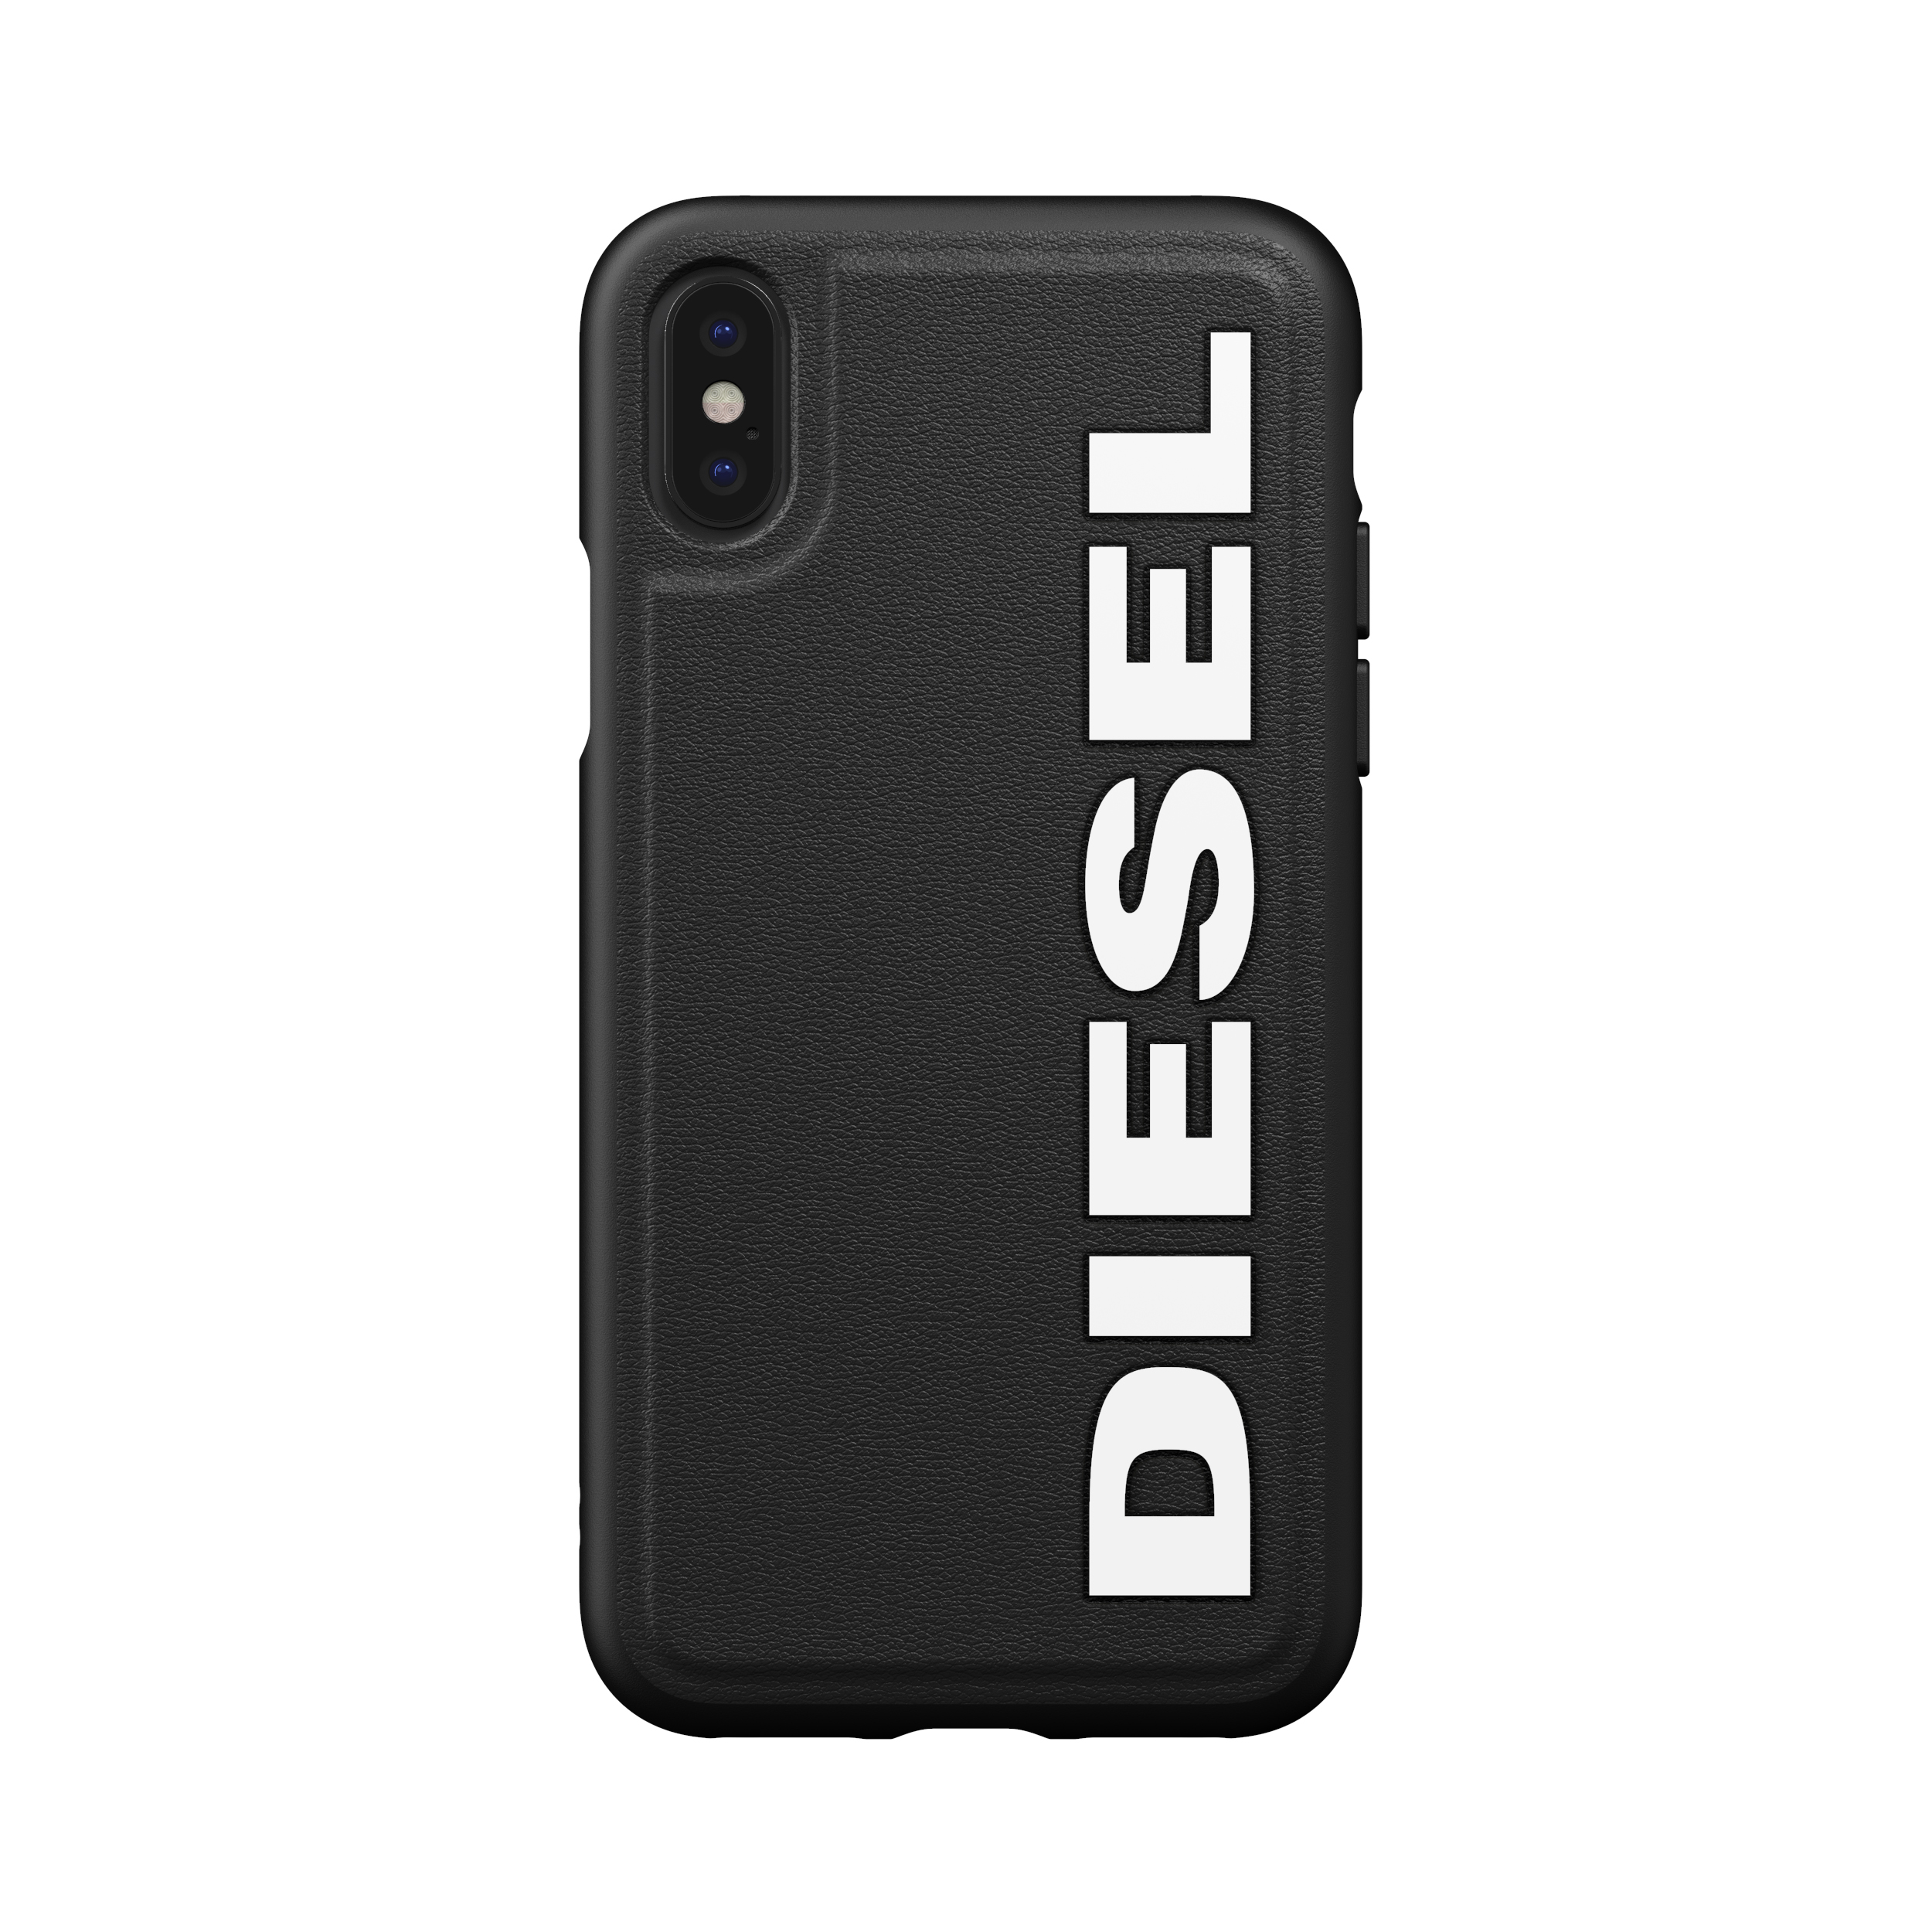 Ochranný kryt pro iPhone XS / X - Diesel, Moulded Case Core Black